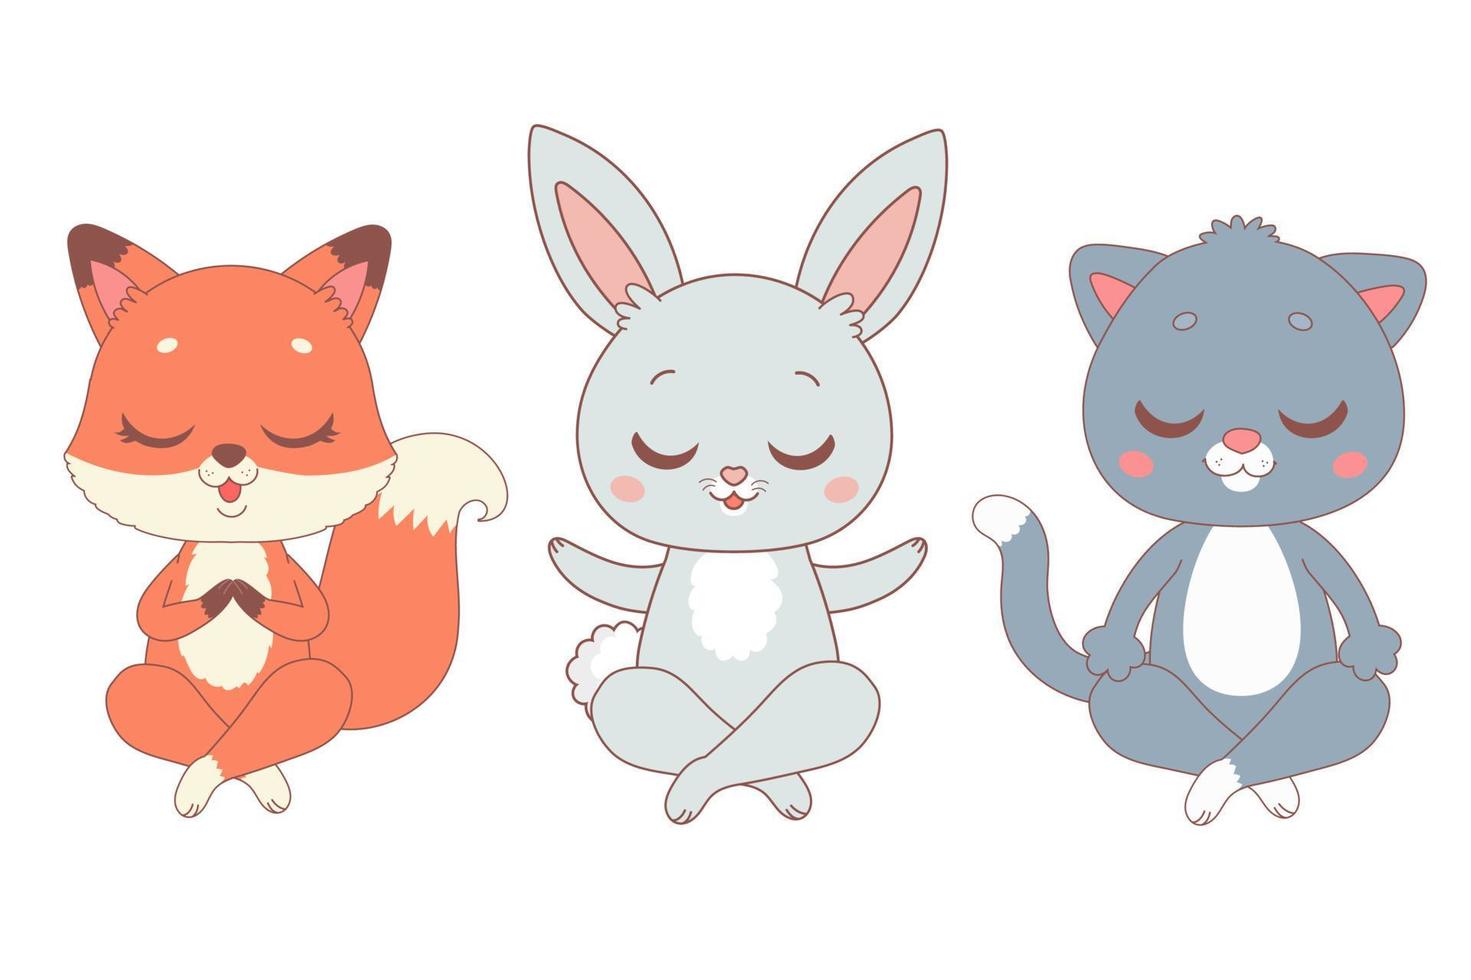 animaux de dessin animé de yoga - renard, lapin et chat, illustration vectorielle vecteur